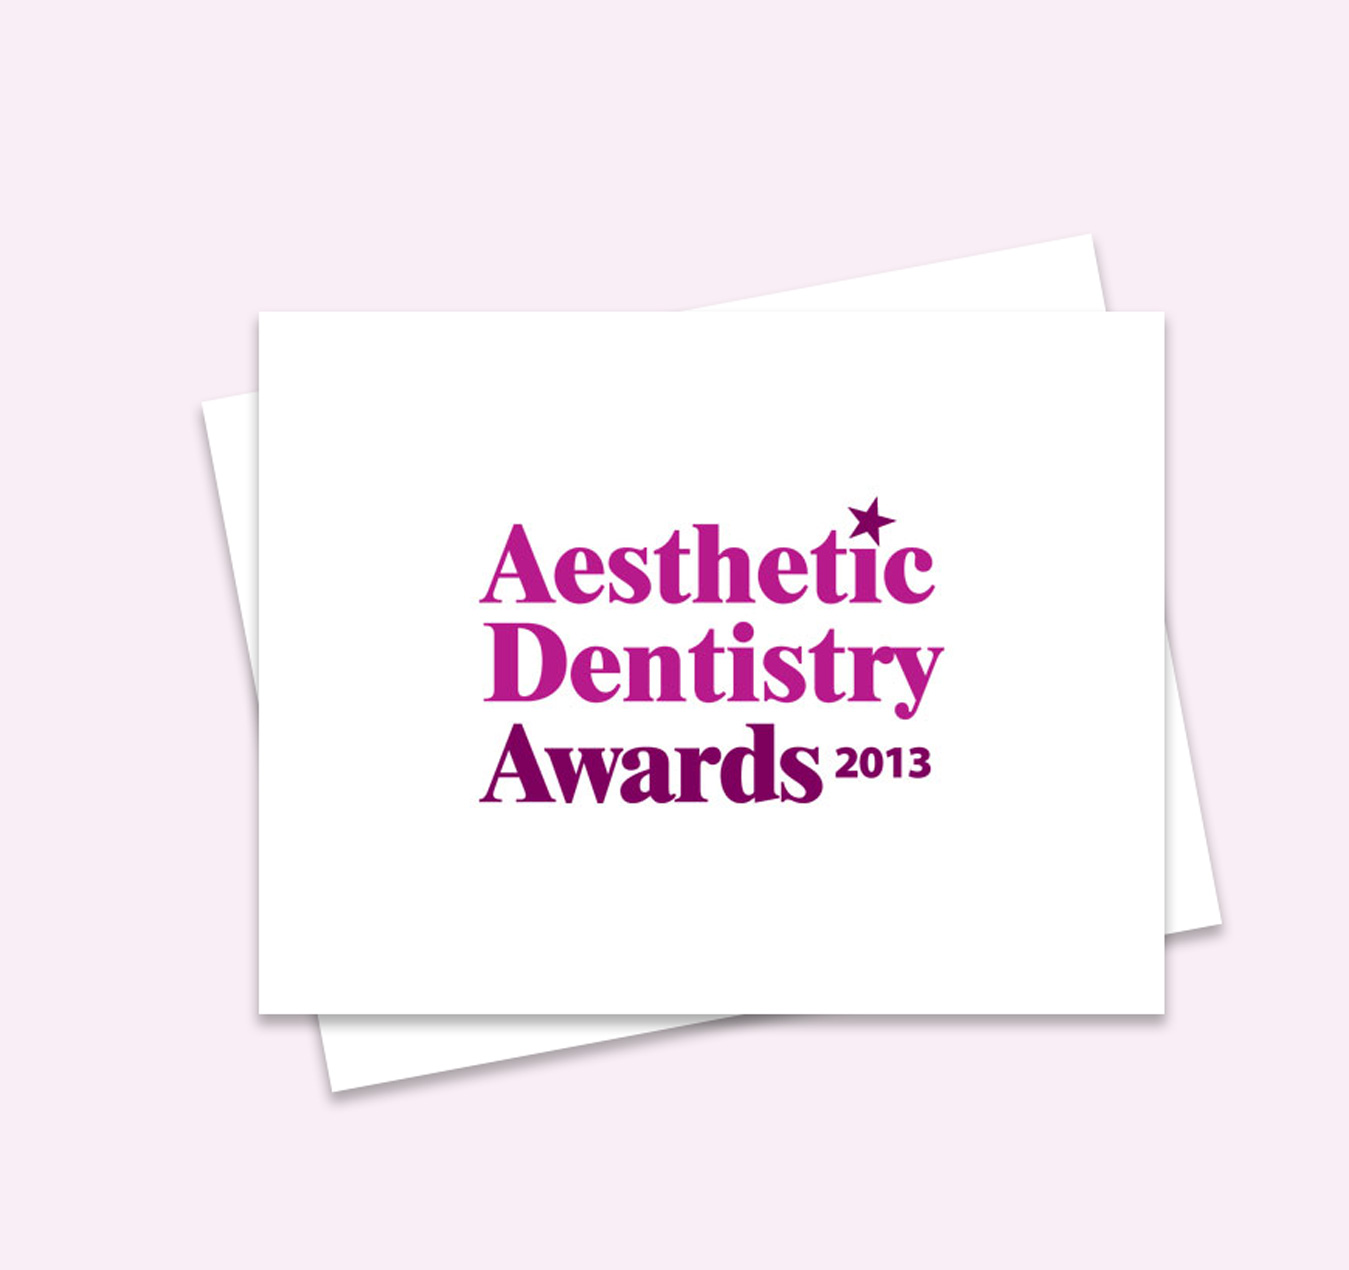 Aesthetic Dentistry Awards 2013